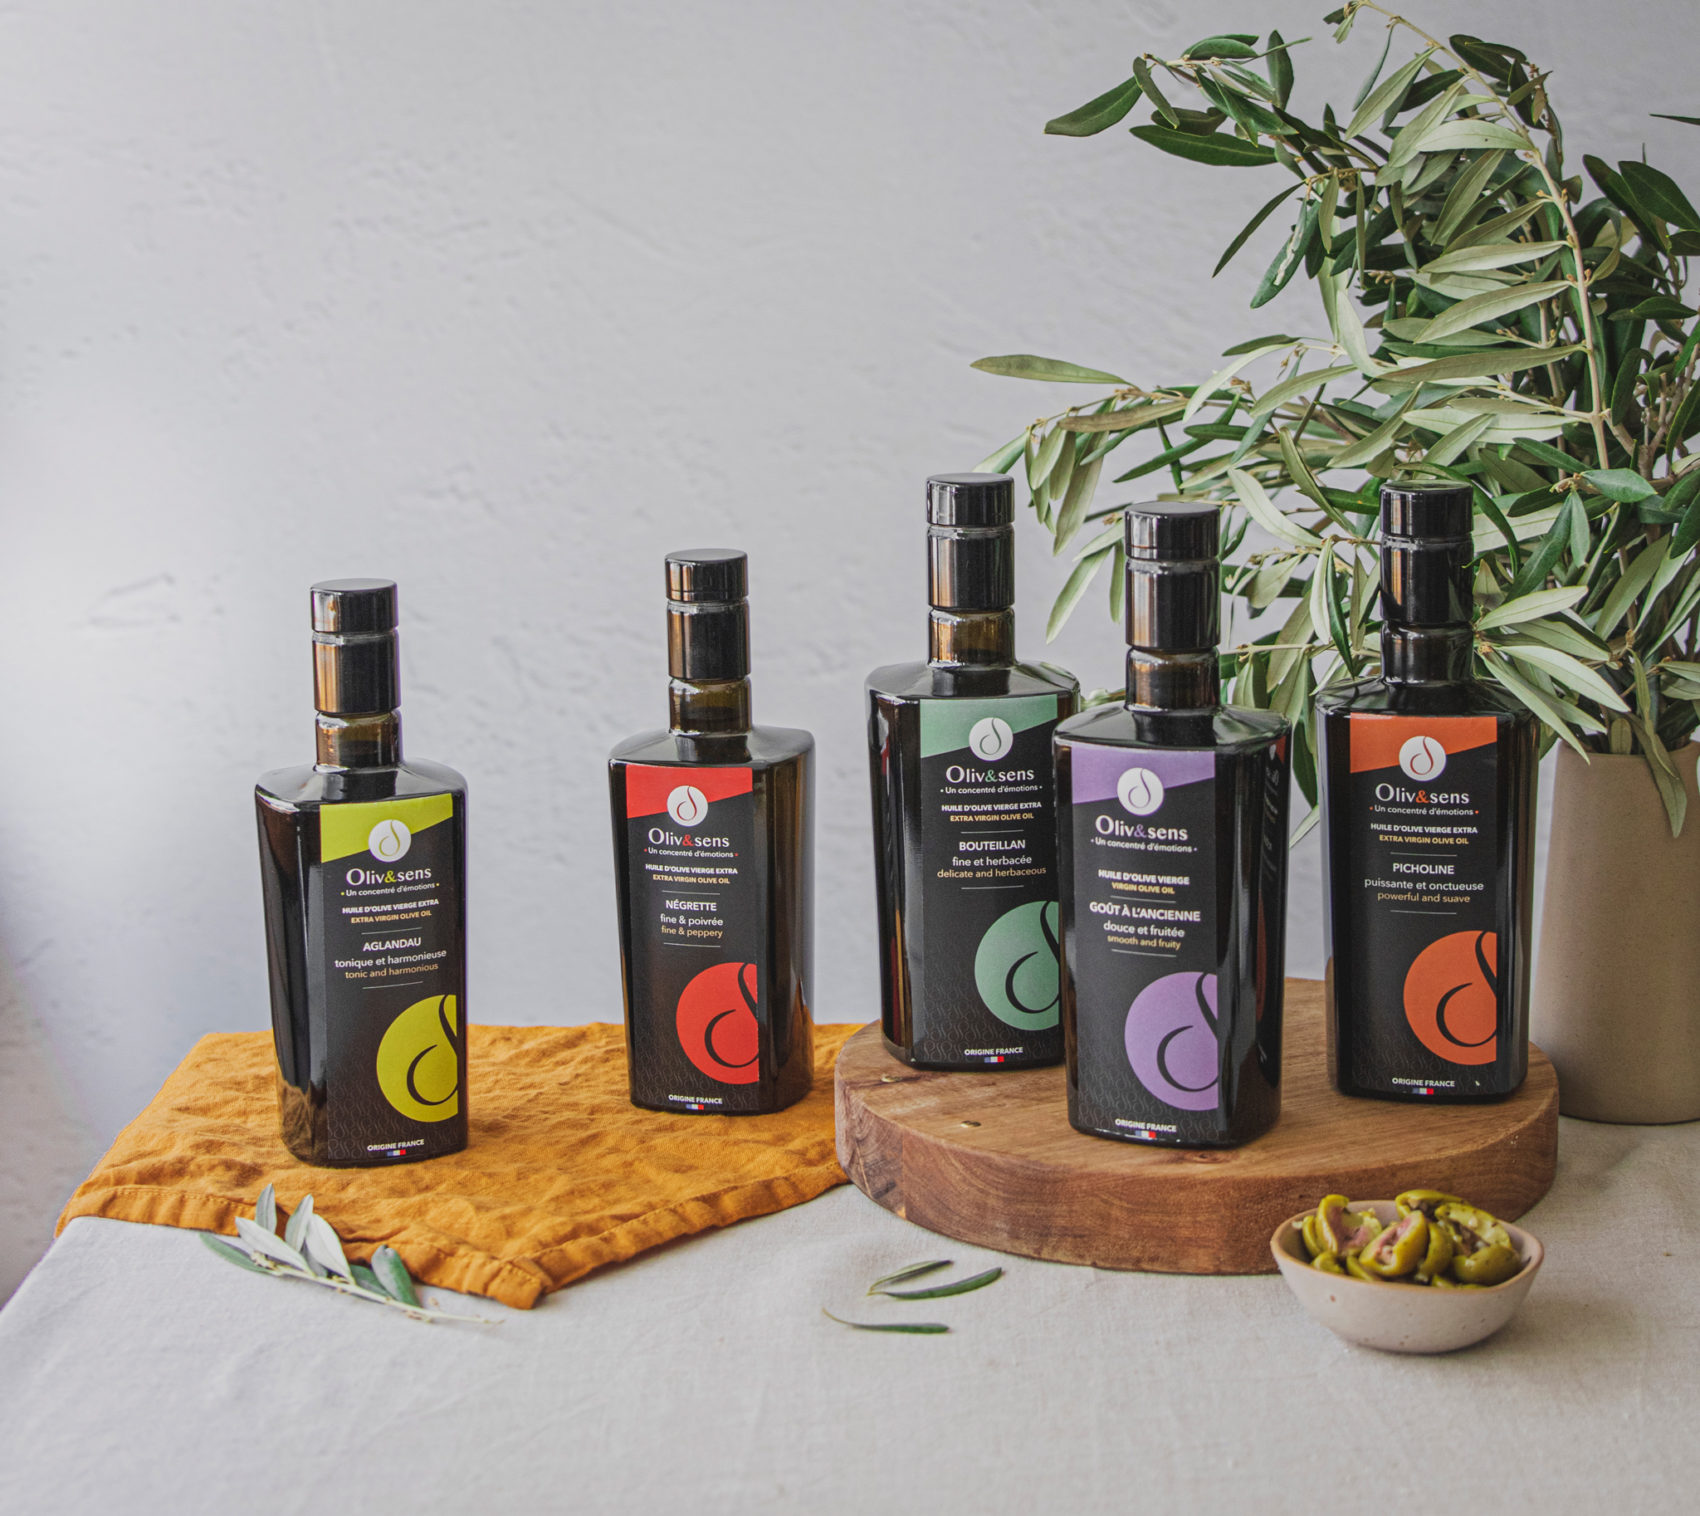 Olive Oil Négrette by Oliv&sens